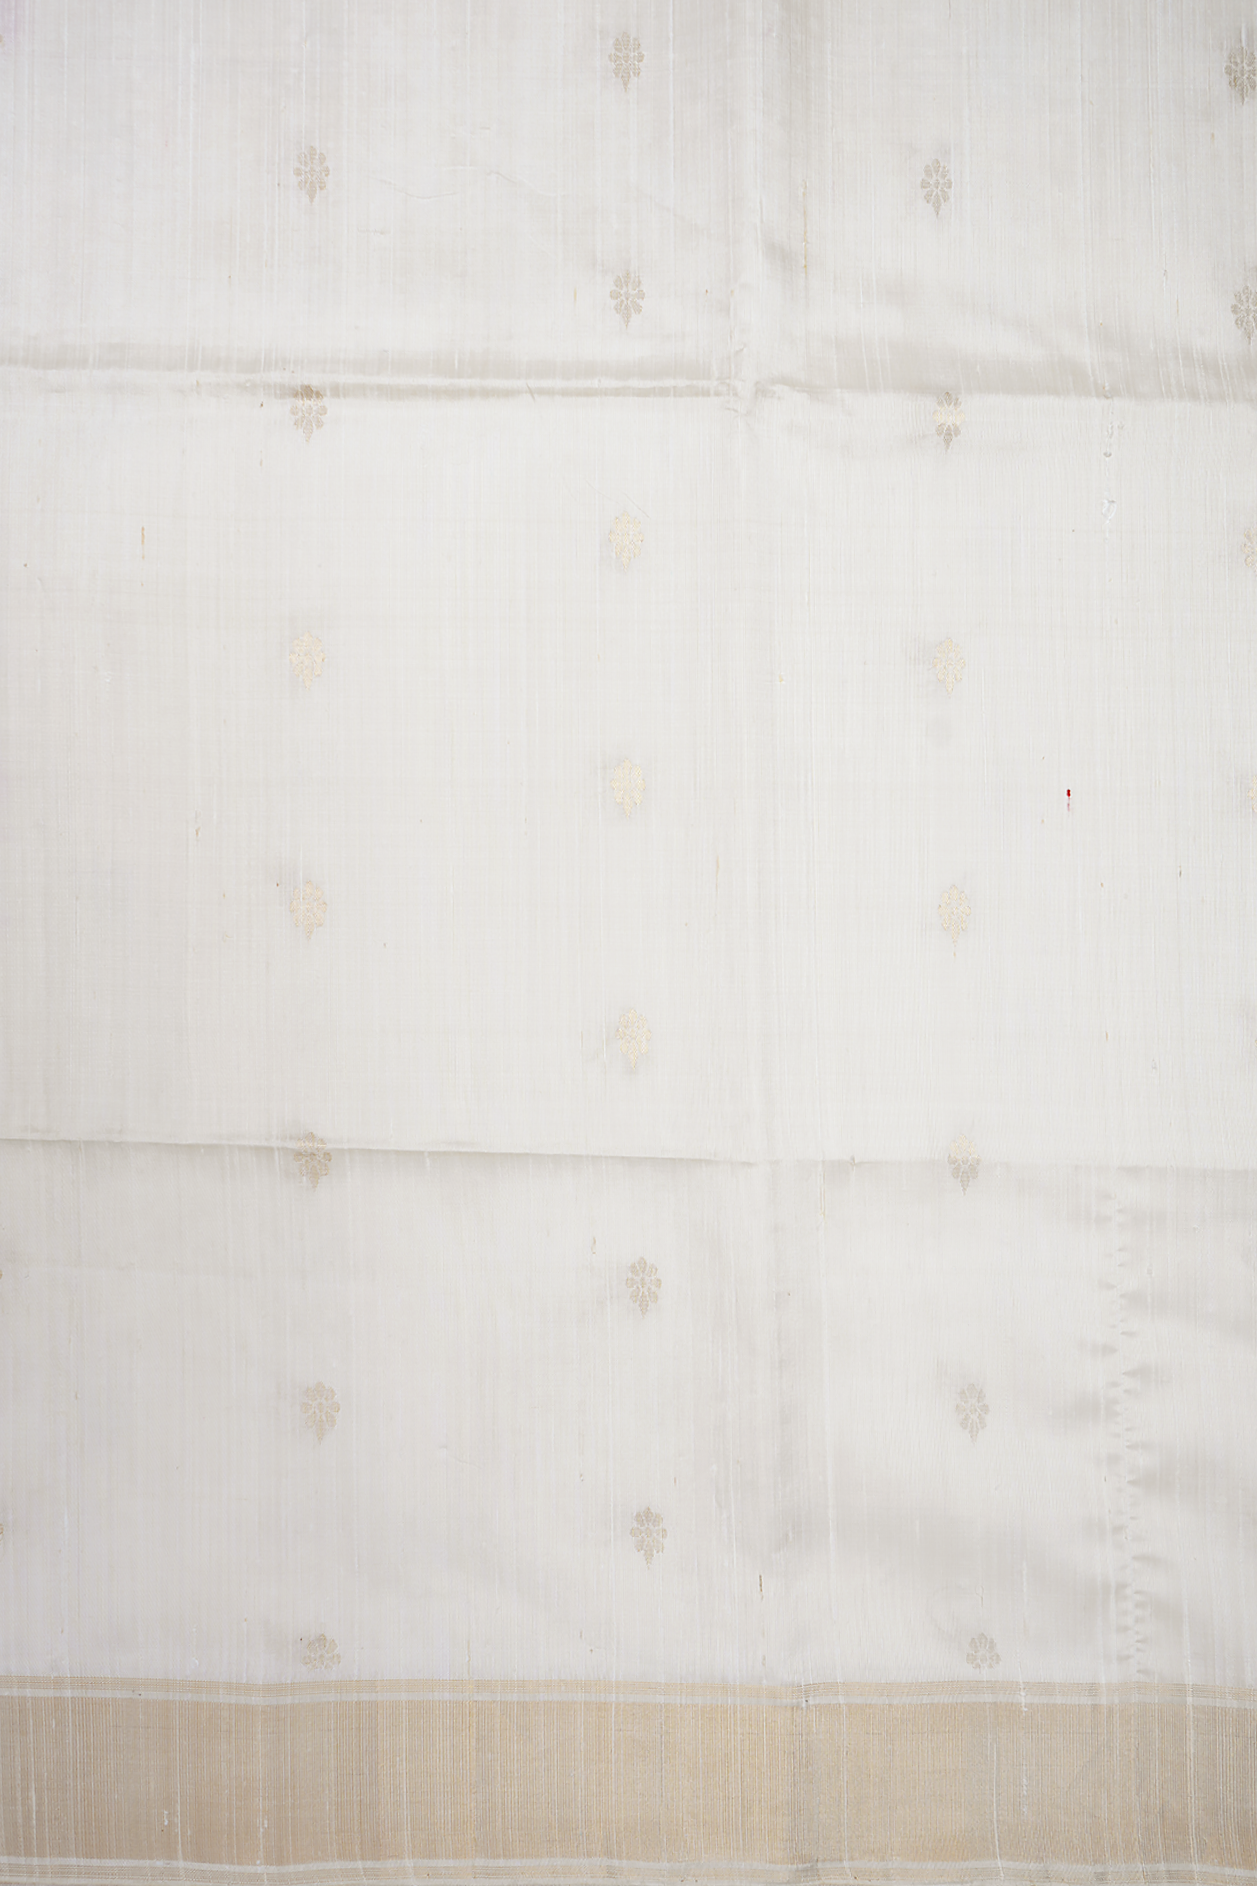 Allover Buttas Design White Raw Silk Saree